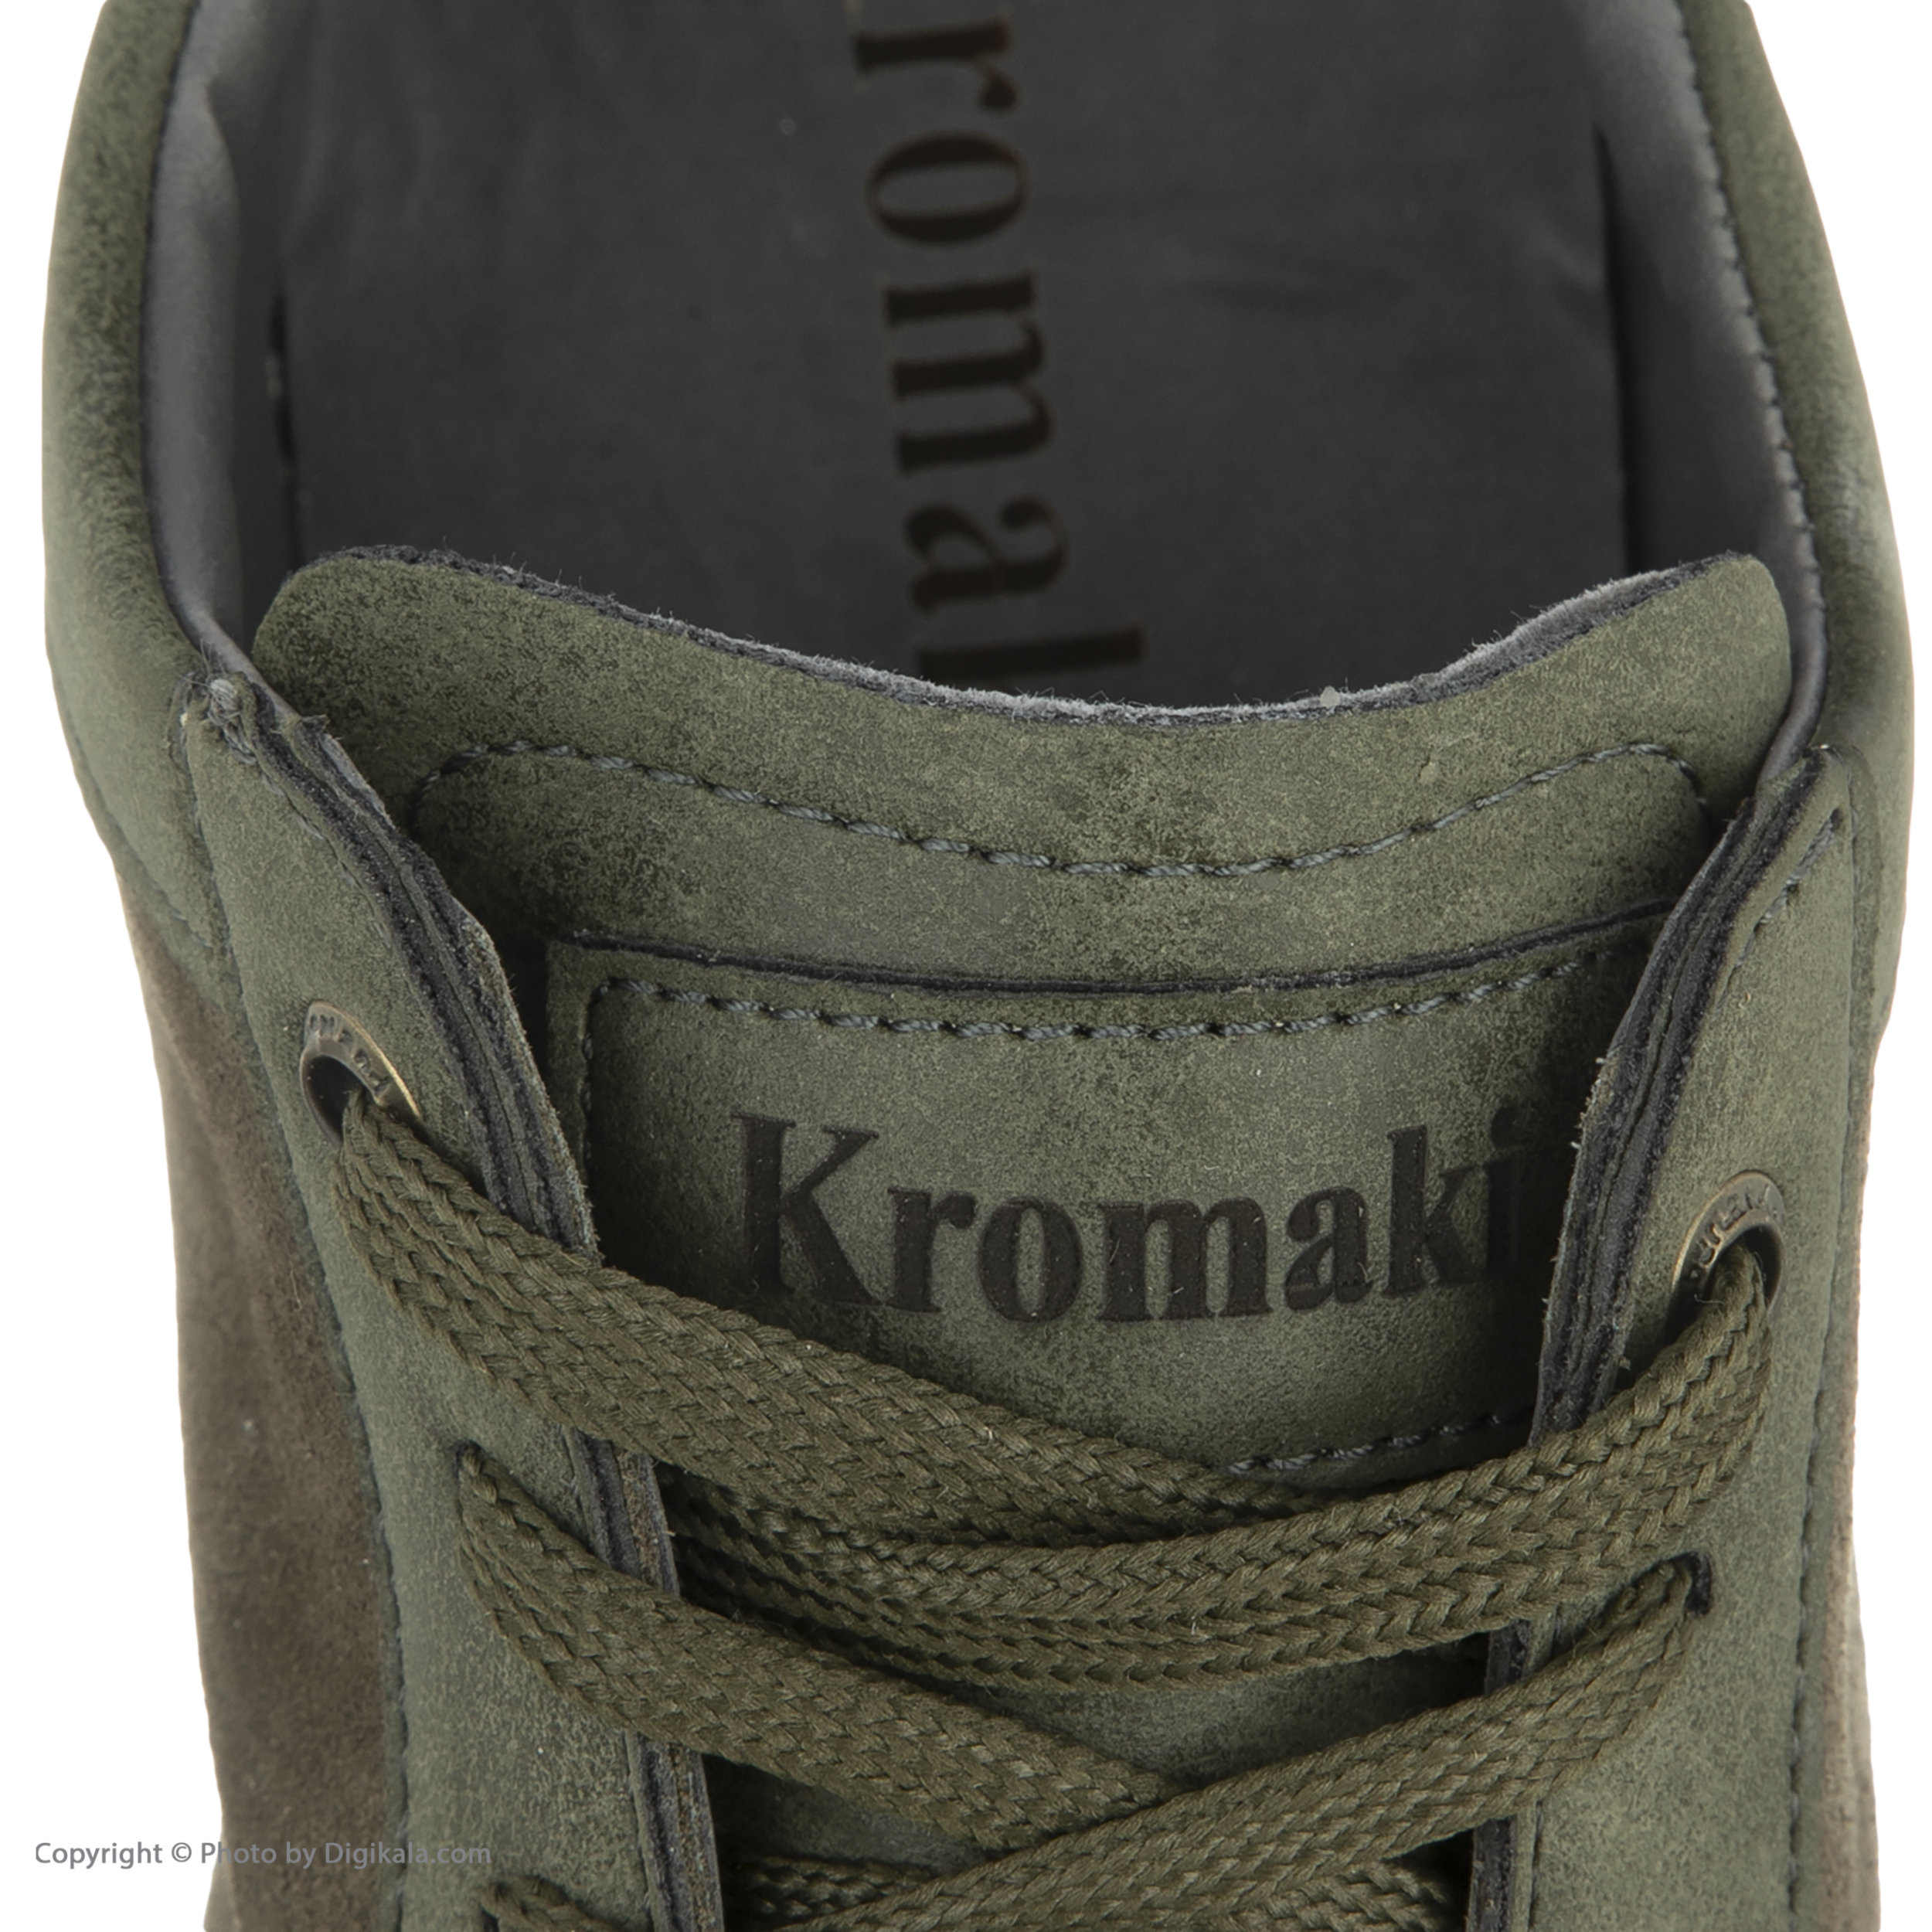 کفش روزمره مردانه کروماکی مدل km20024 -  - 7